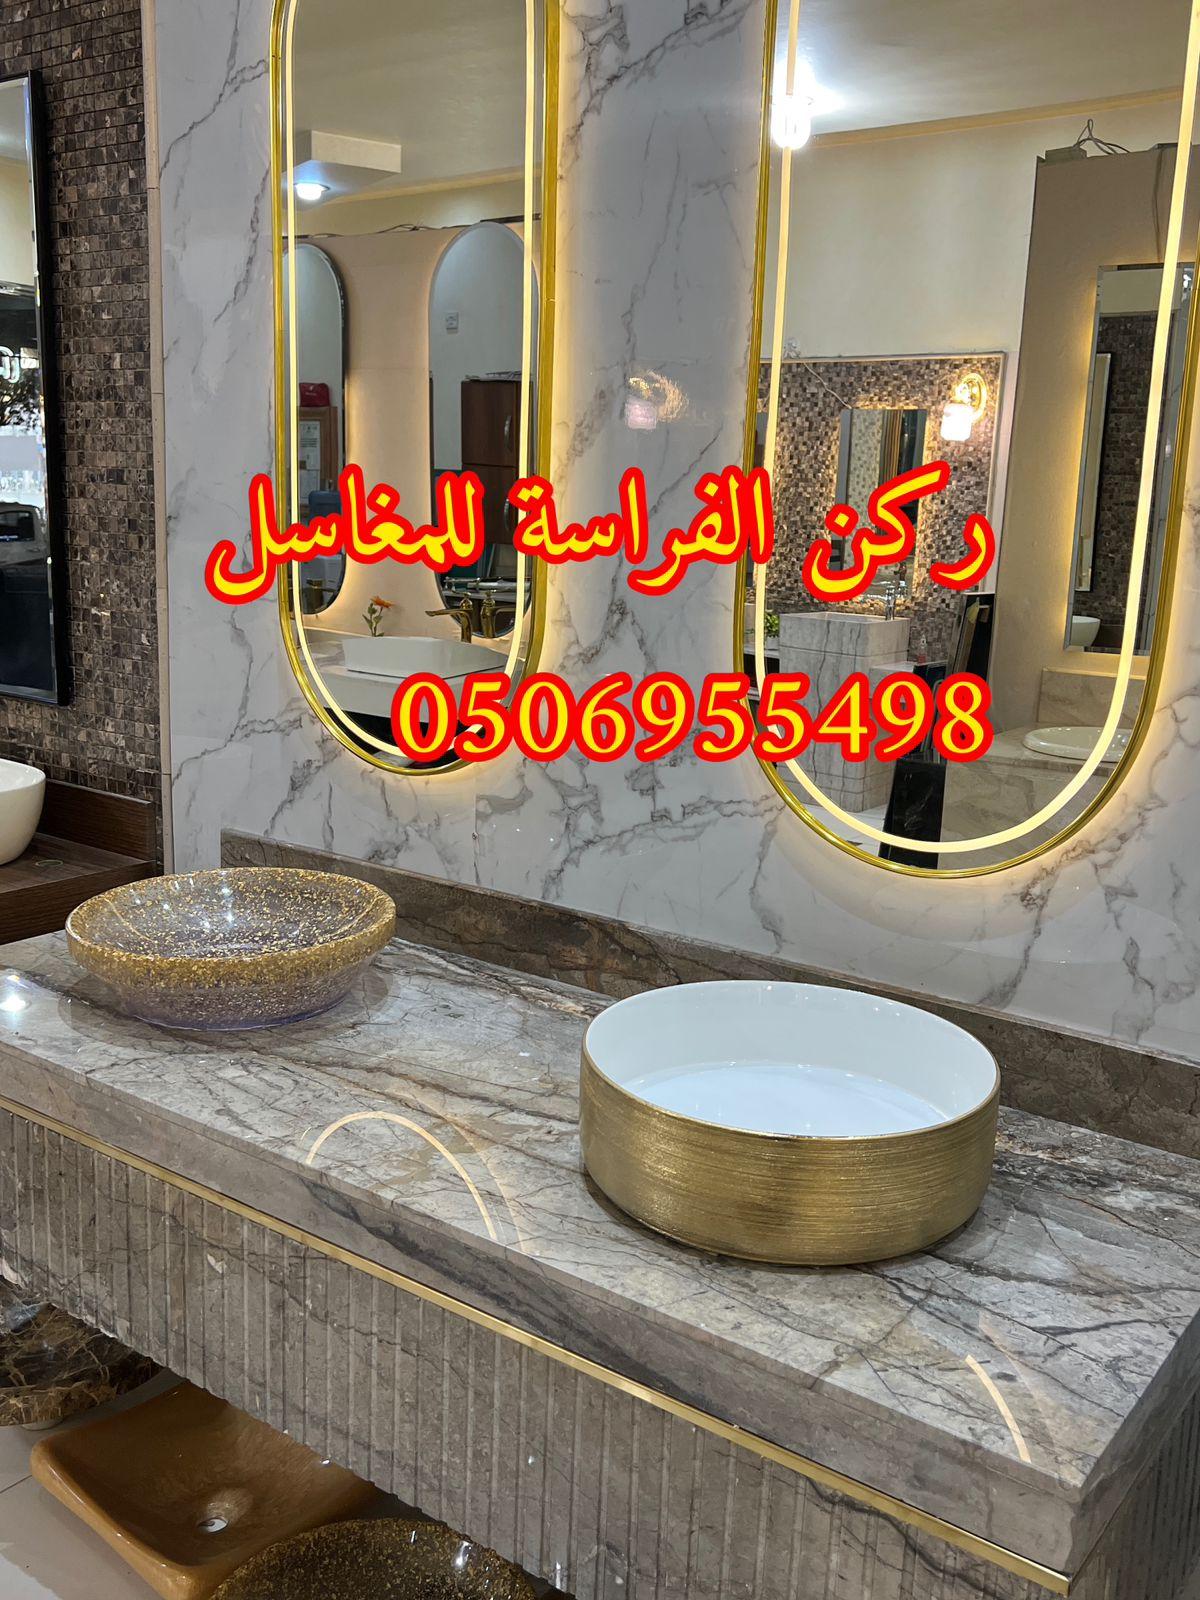 الرياض - تصاميم مغاسل رخام للمجالس في الرياض,0506955498 919516311